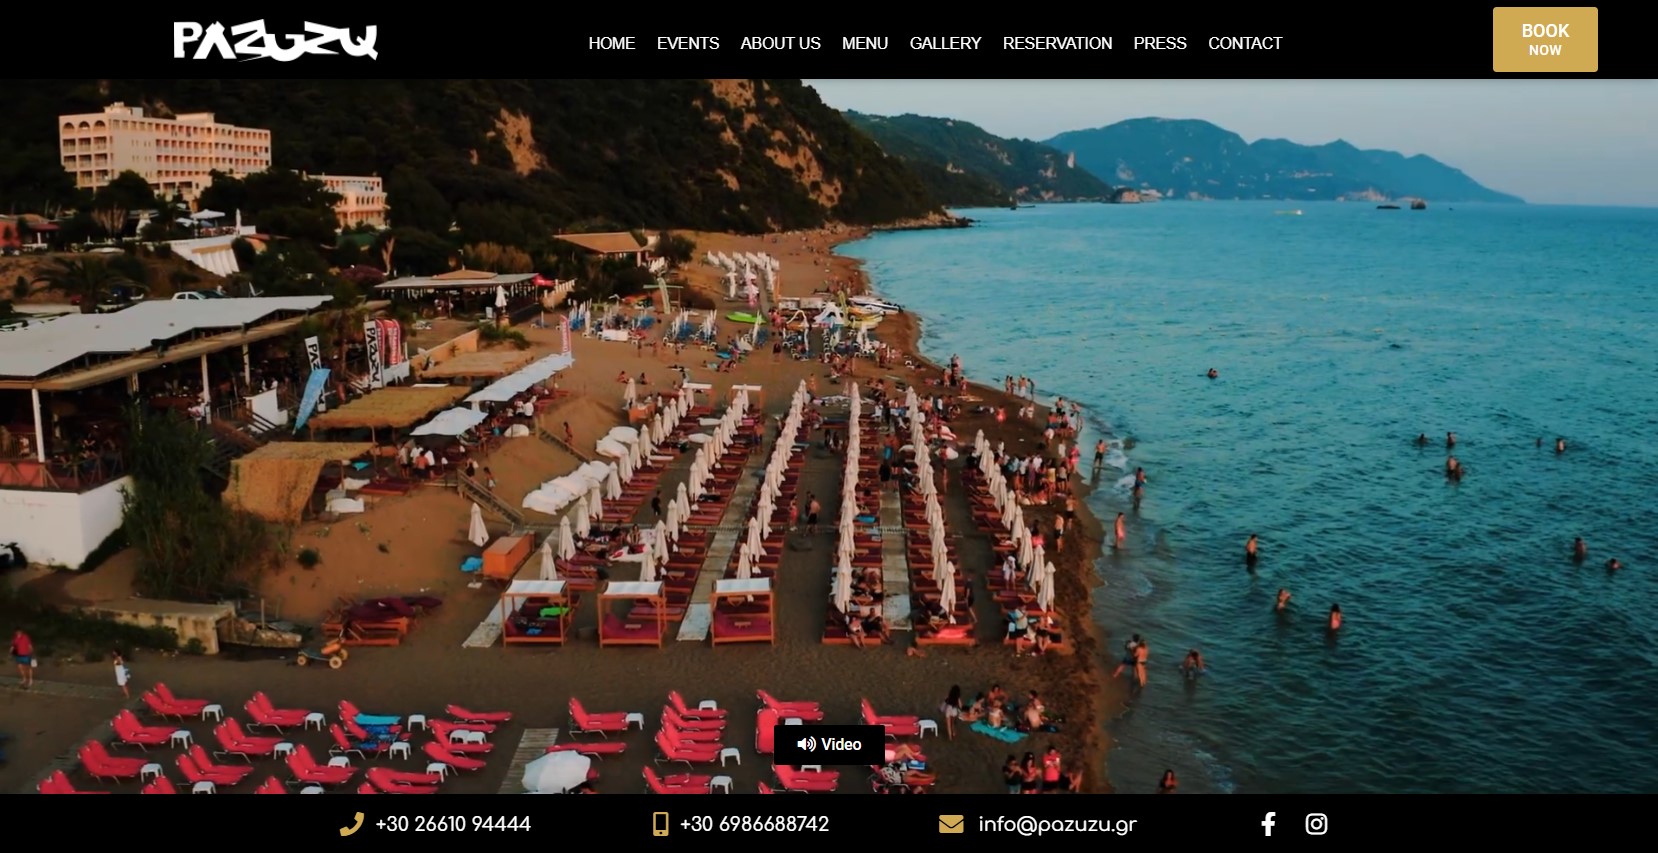 Κατασκευή Ιστοσελίδων Κέρκυρα - Pazuzu Glyfada Beach Bar cover image ιστοσελίδα Κέρκυρα